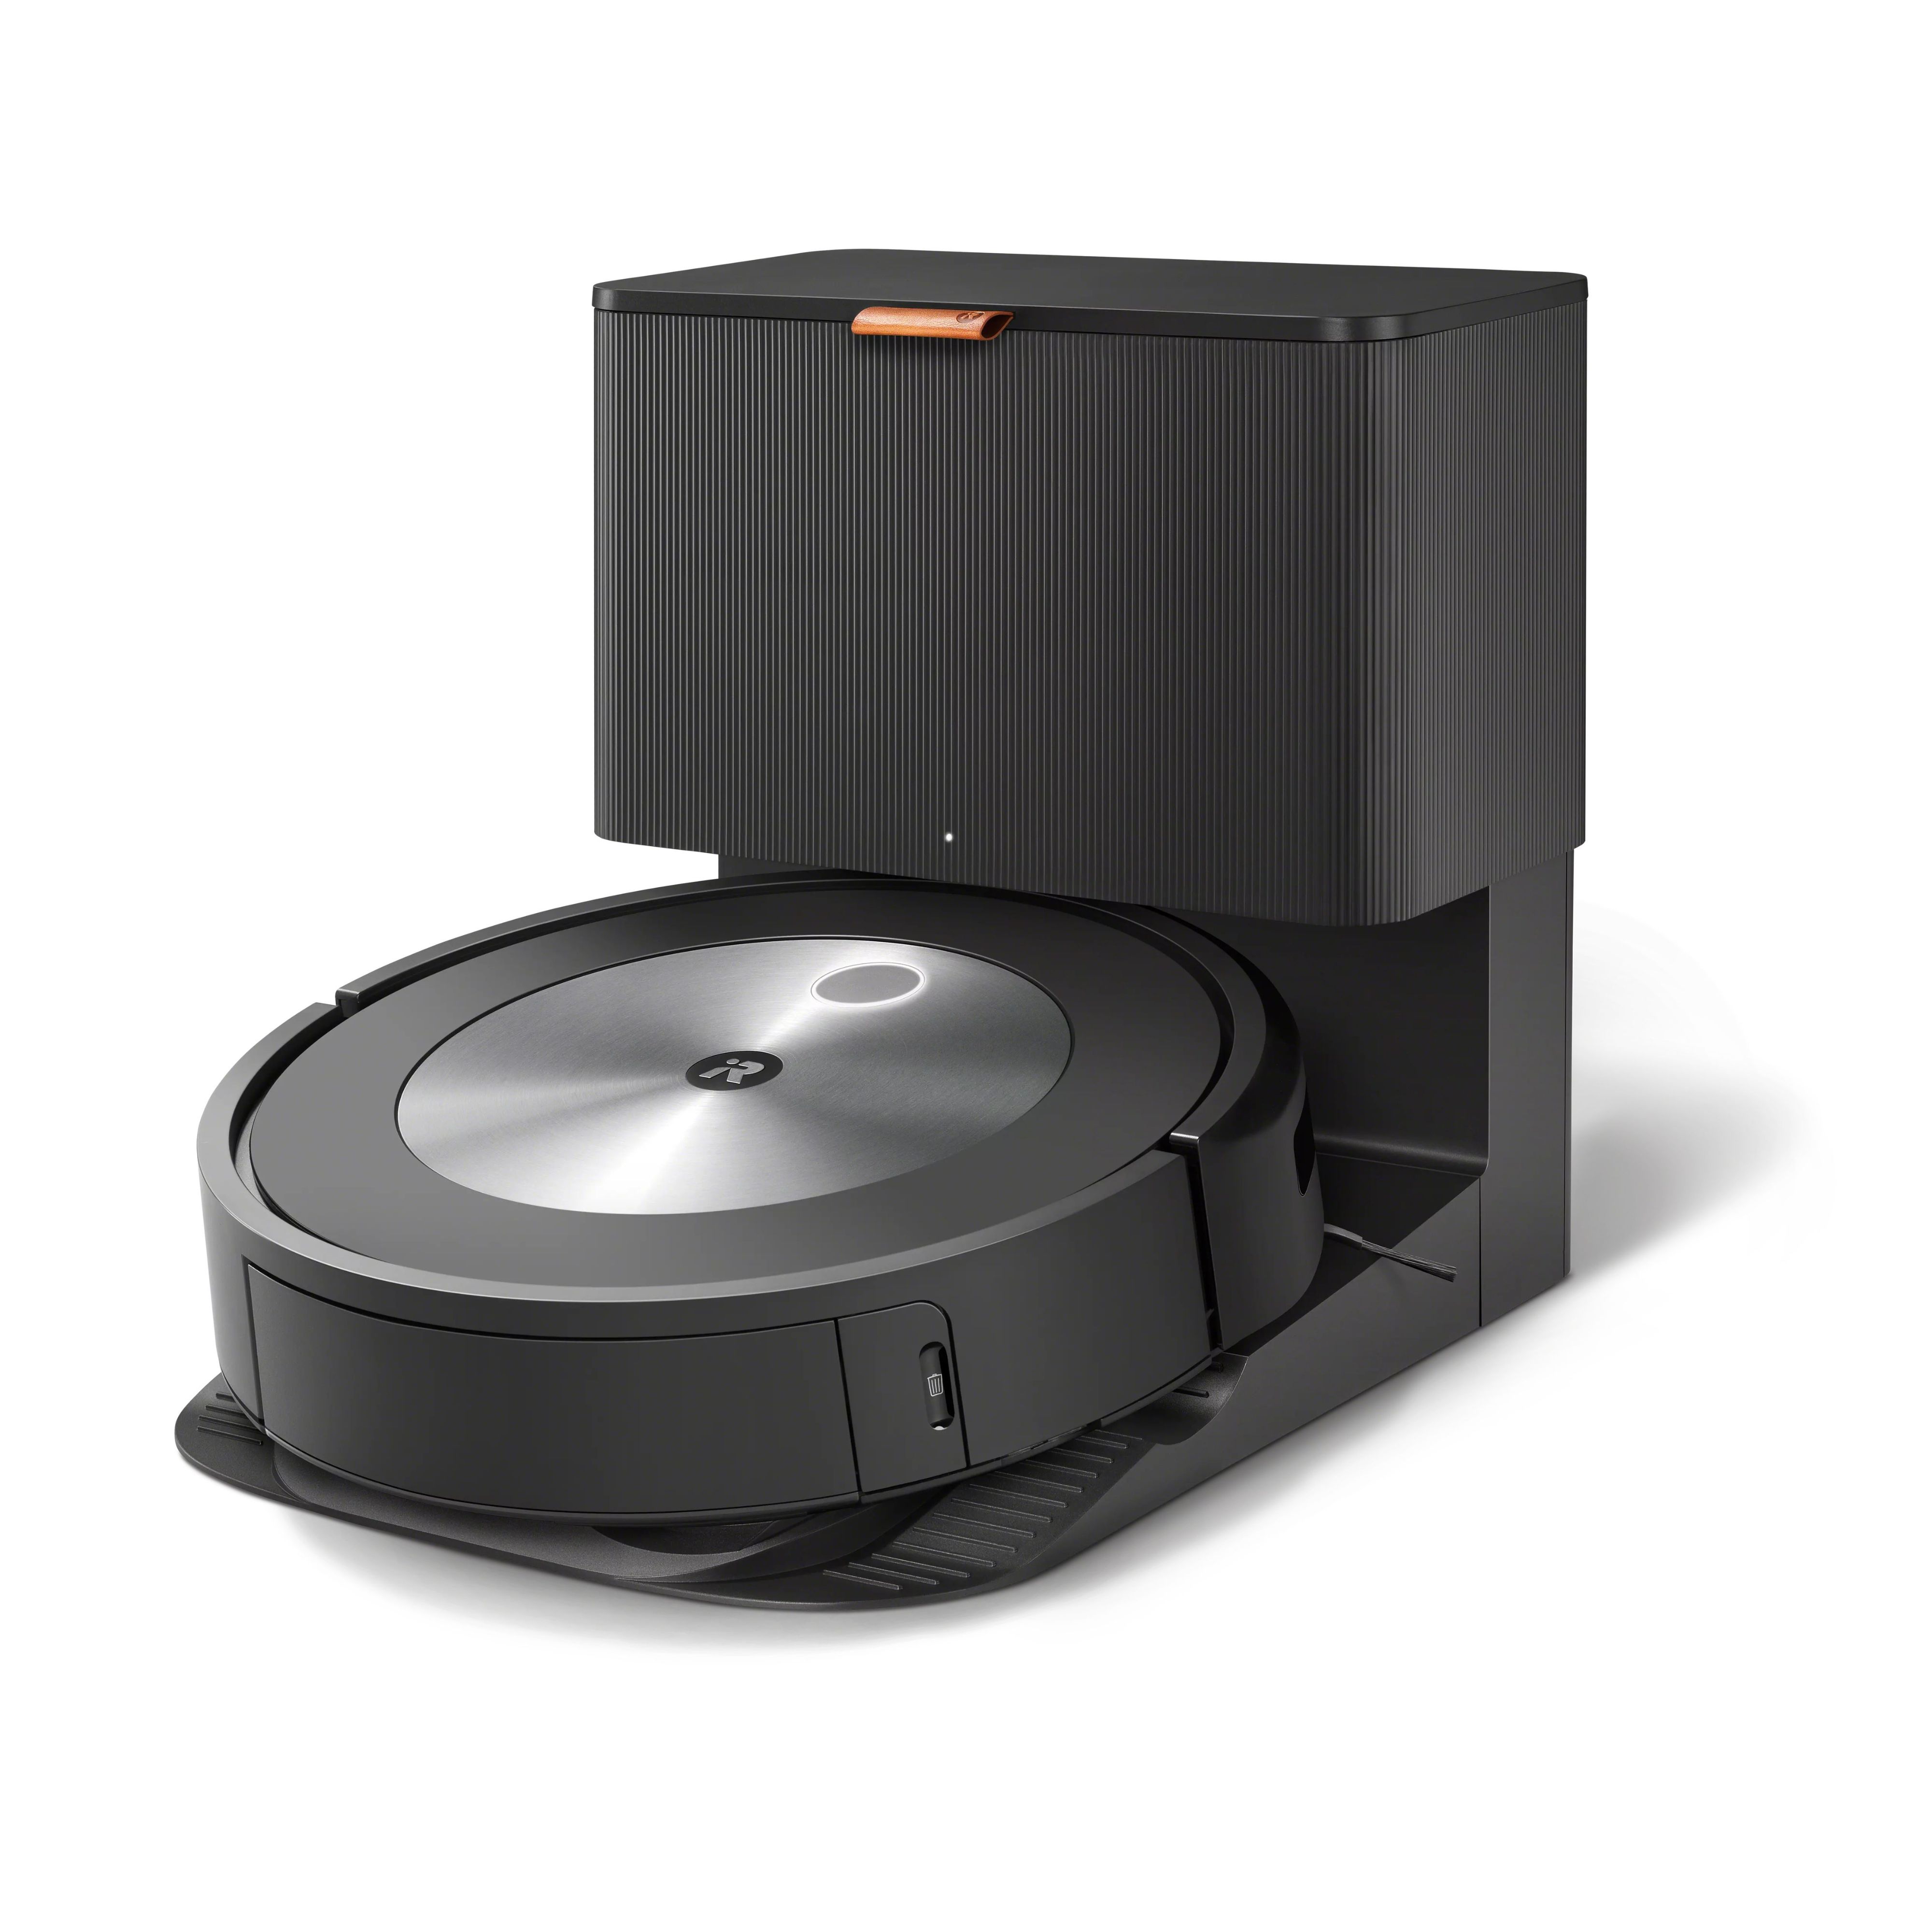 James Dyson concepto Marco de referencia Robot aspirador Roomba® j7+ con vaciado automático | iRobot® | iRobot